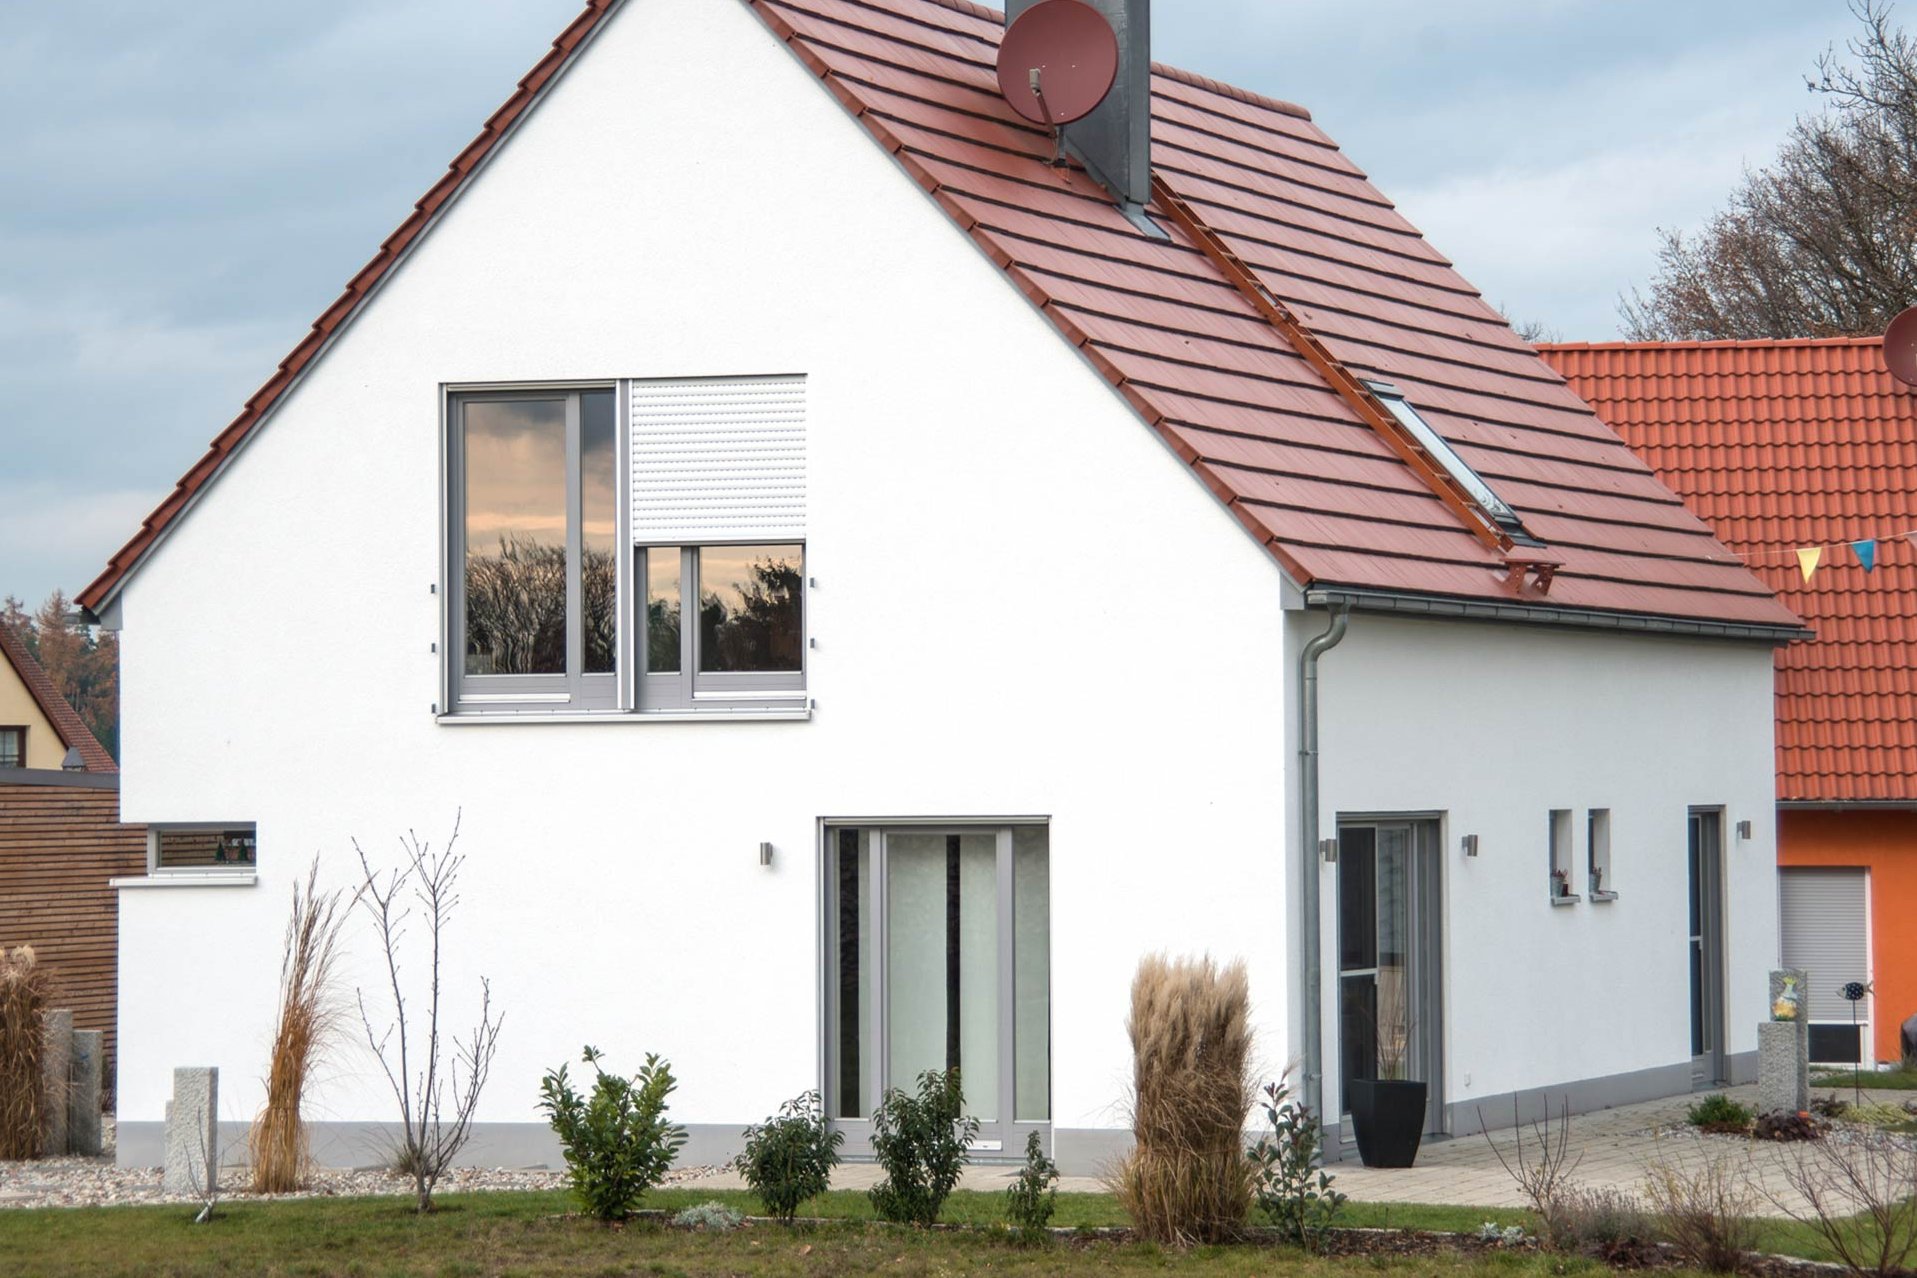 Fensterlösungen von einem Fensterbauer aus Bad Kreuznach für ein Einfamilienhaus